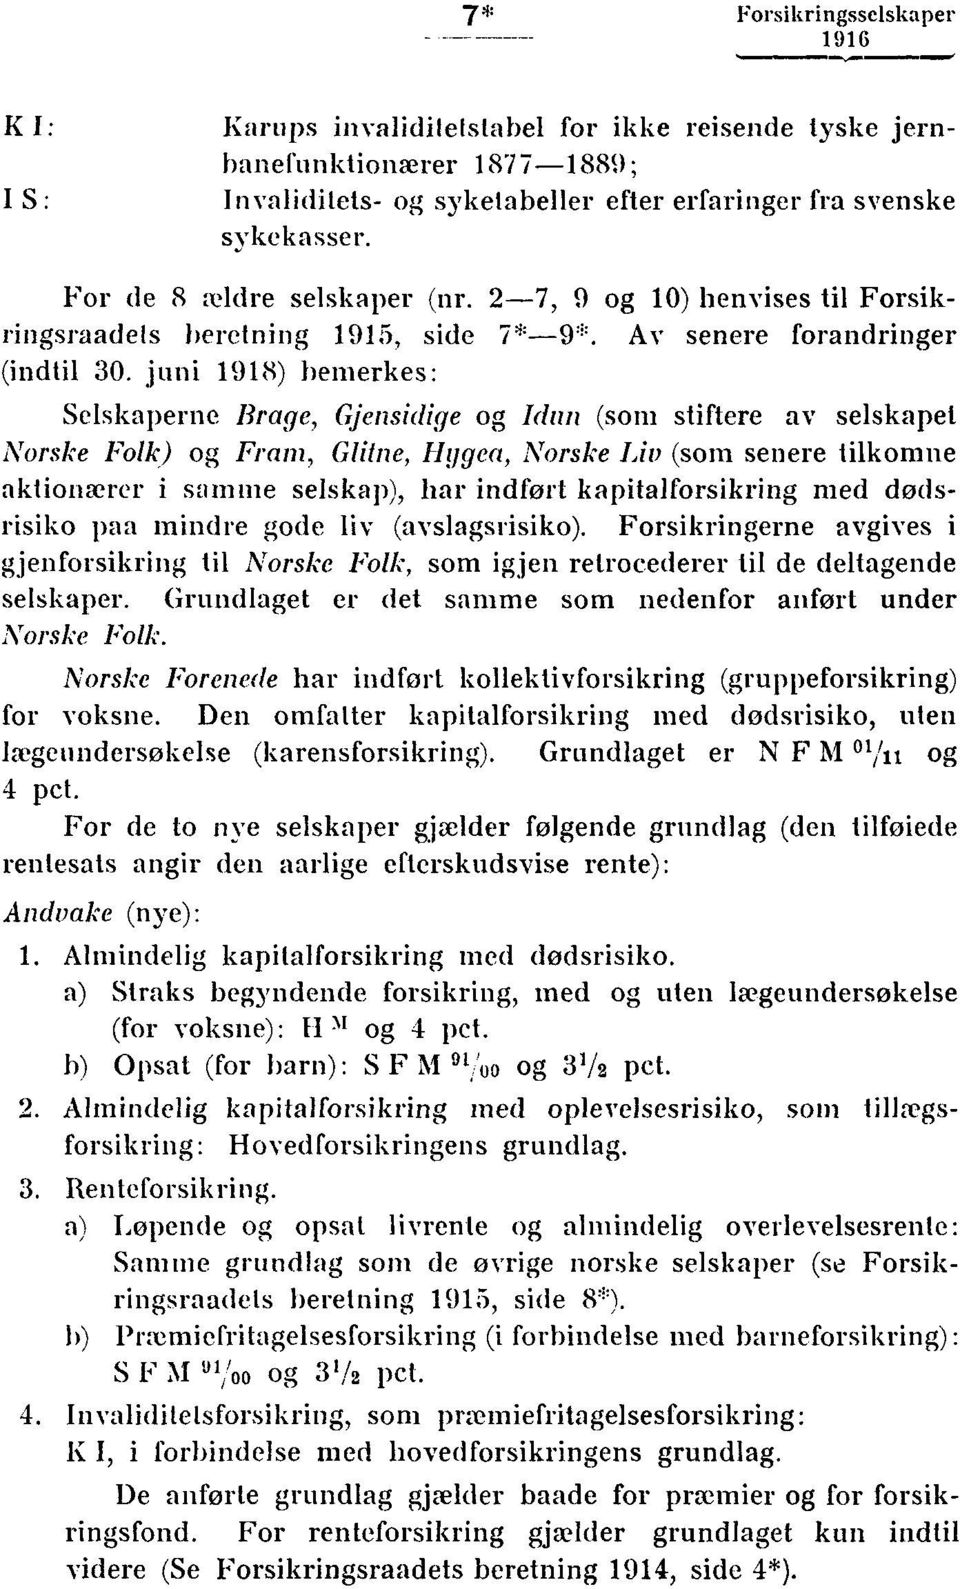 juni 1918) bemerkes: Selskaperne Brage, Gjensidige og Idnn (som stiftere av selskapet Norske Folk) og Fram, Glitne, Hygea, Norske Lit) (som senere tilkomne aktionærer i samme selskap), har indført